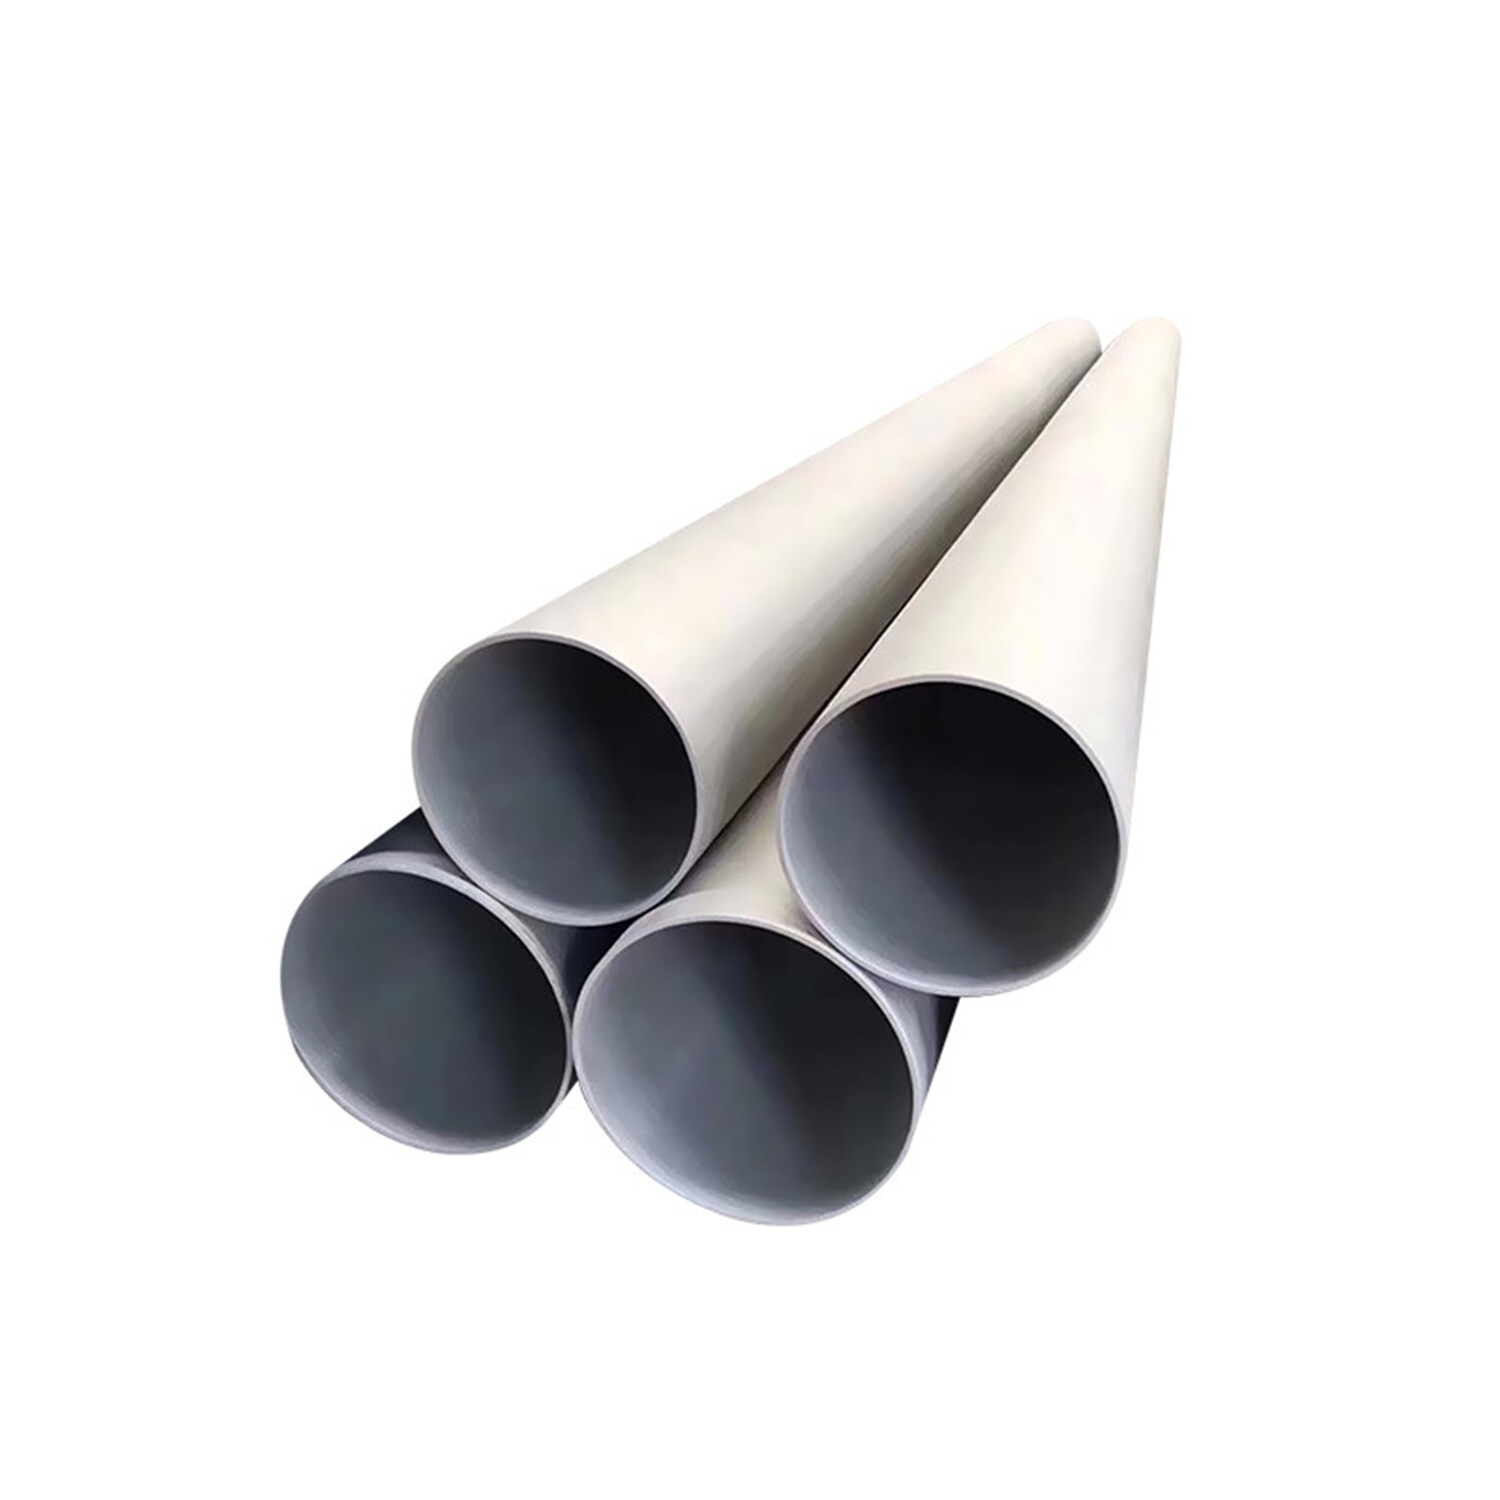 seamless tube, seamless steel tube, seamless tubes, seamless steel tubes